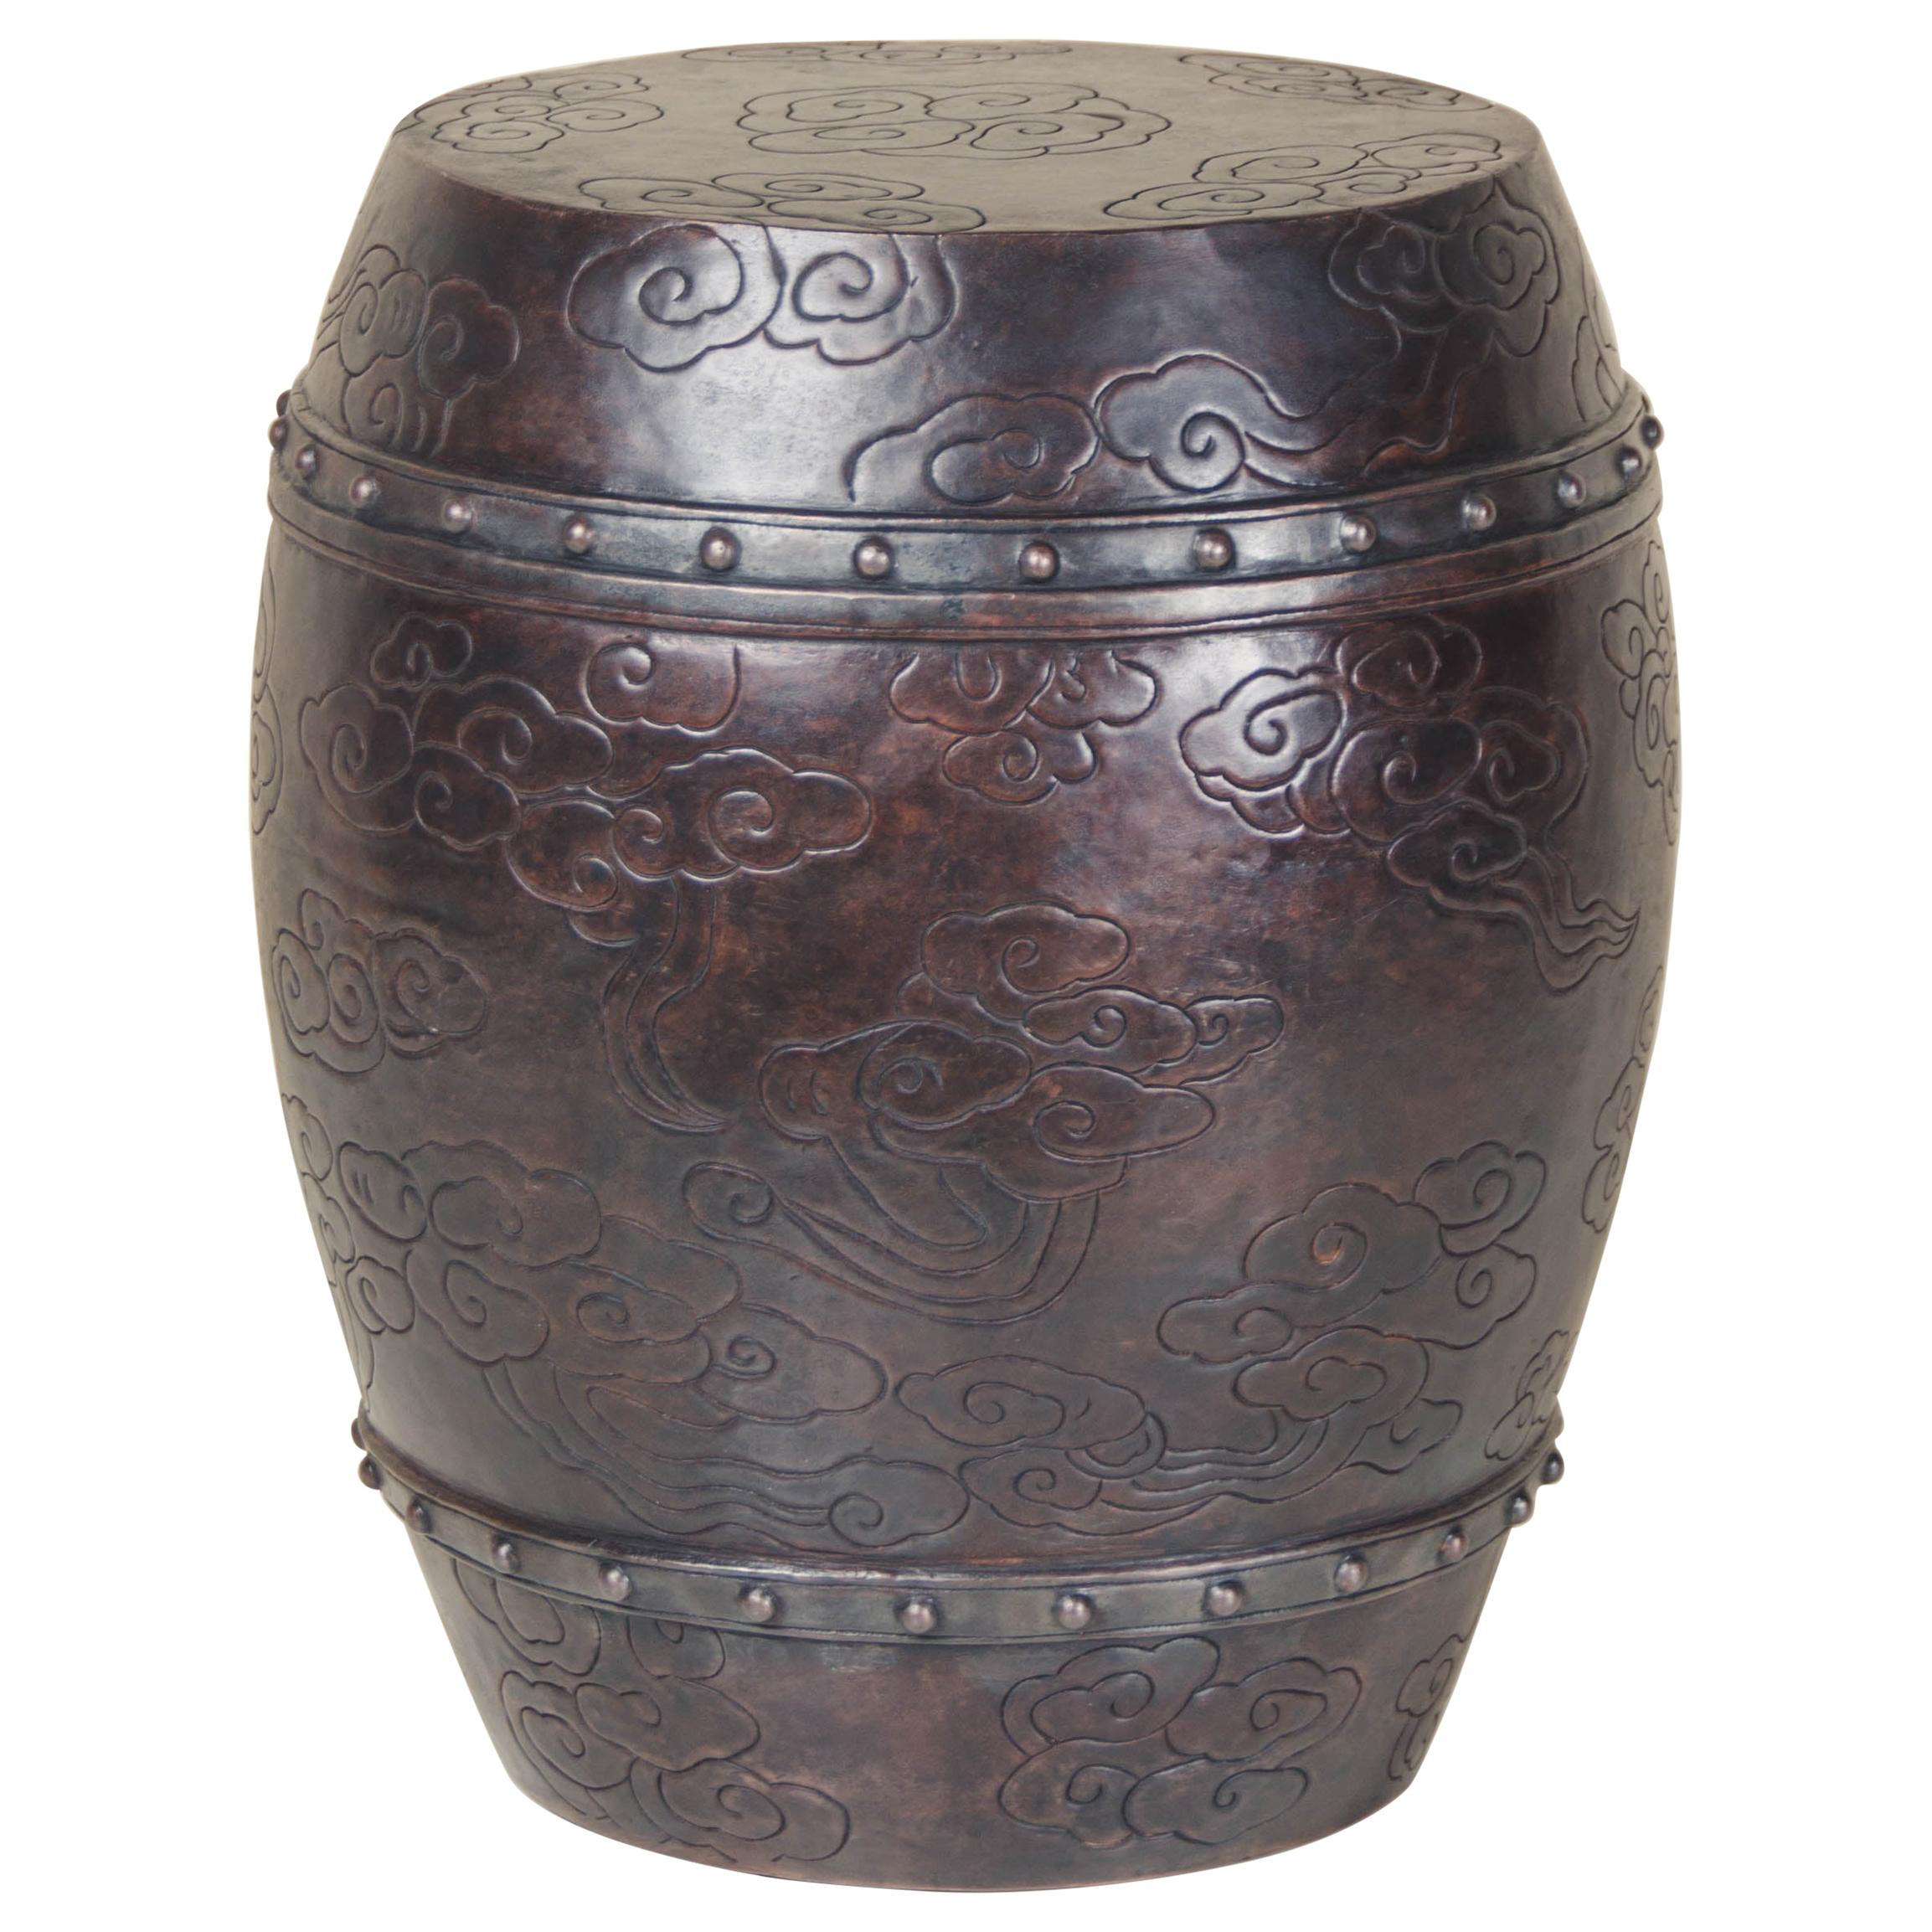 Tabouret de tambour nuageux, cuivre antique de Robert Kuo, repoussé à la main